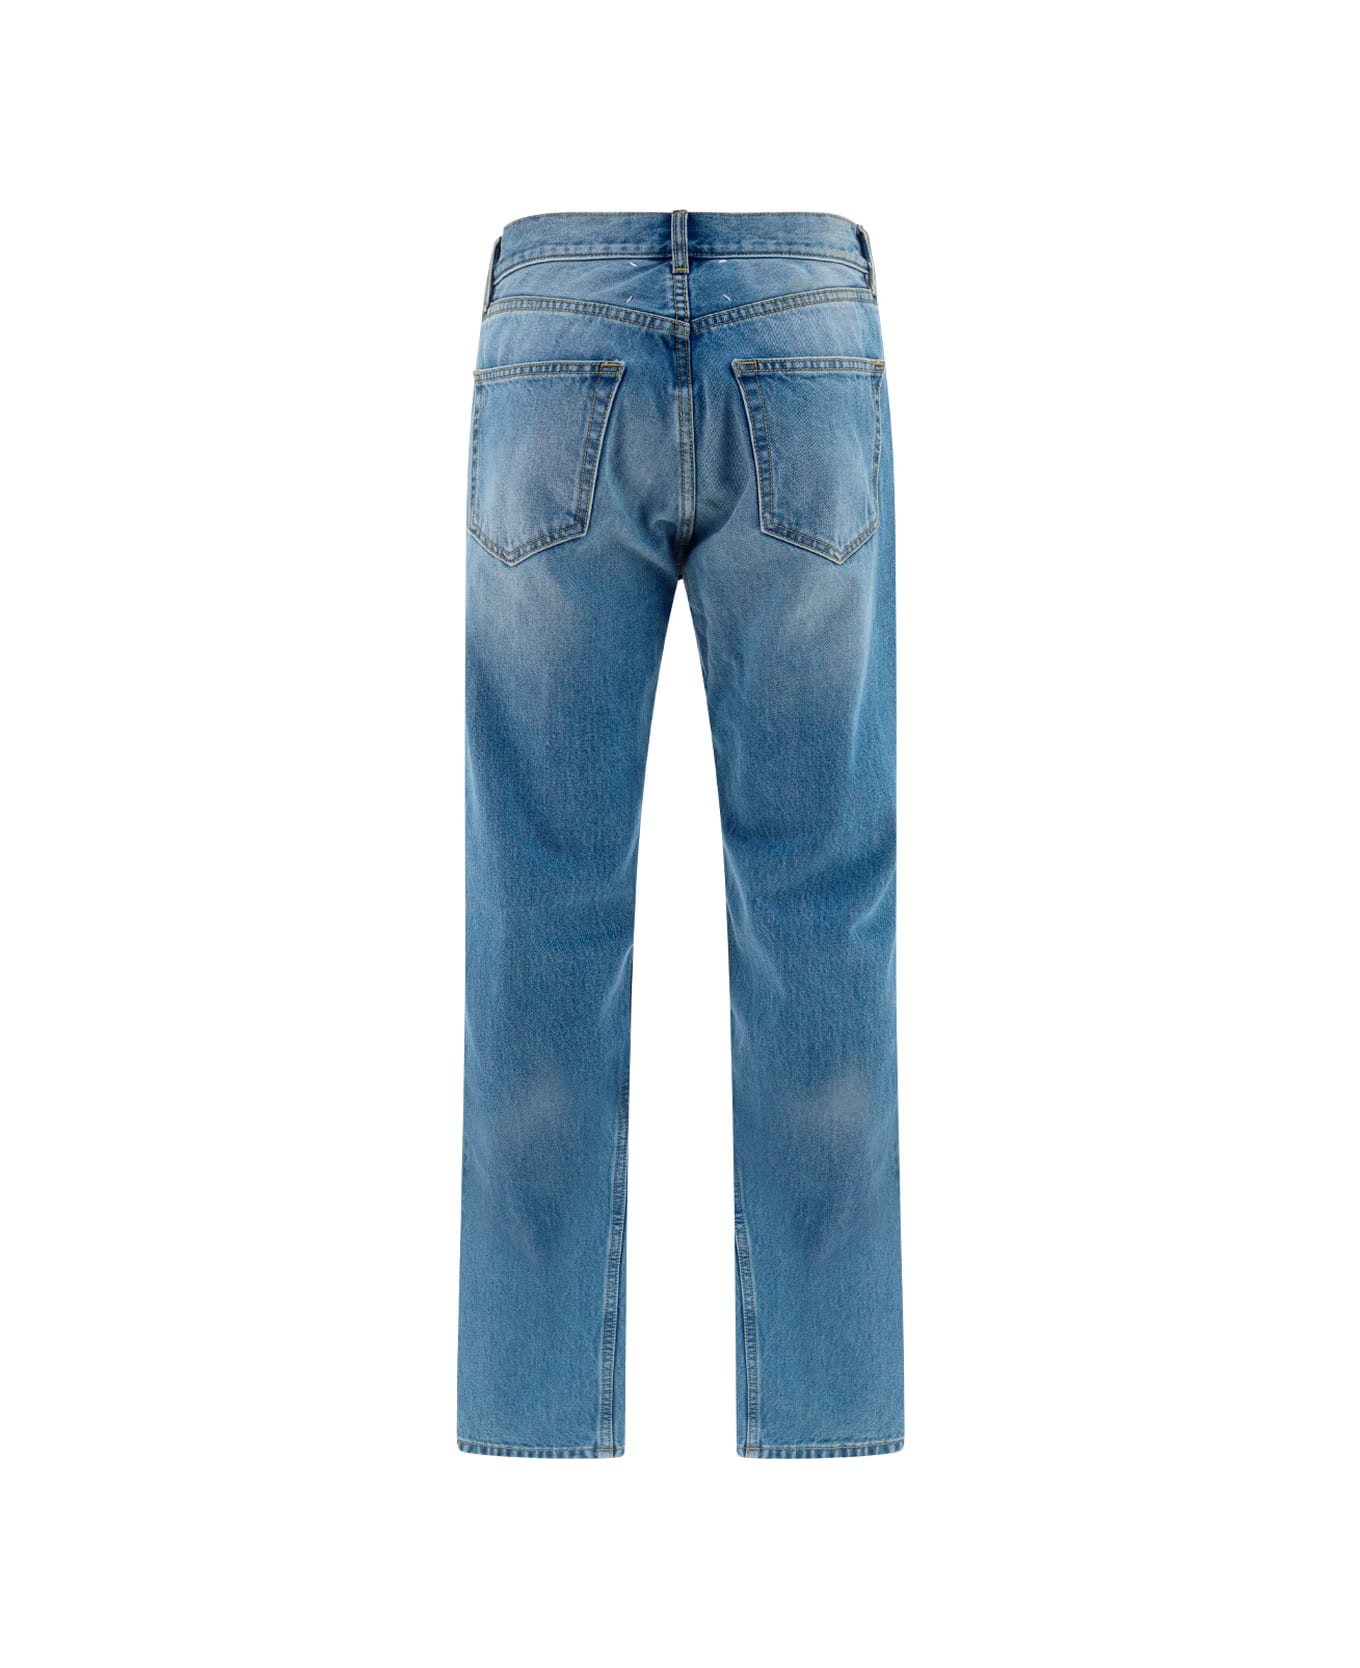 Maison Margiela Jeans - Clear Blue